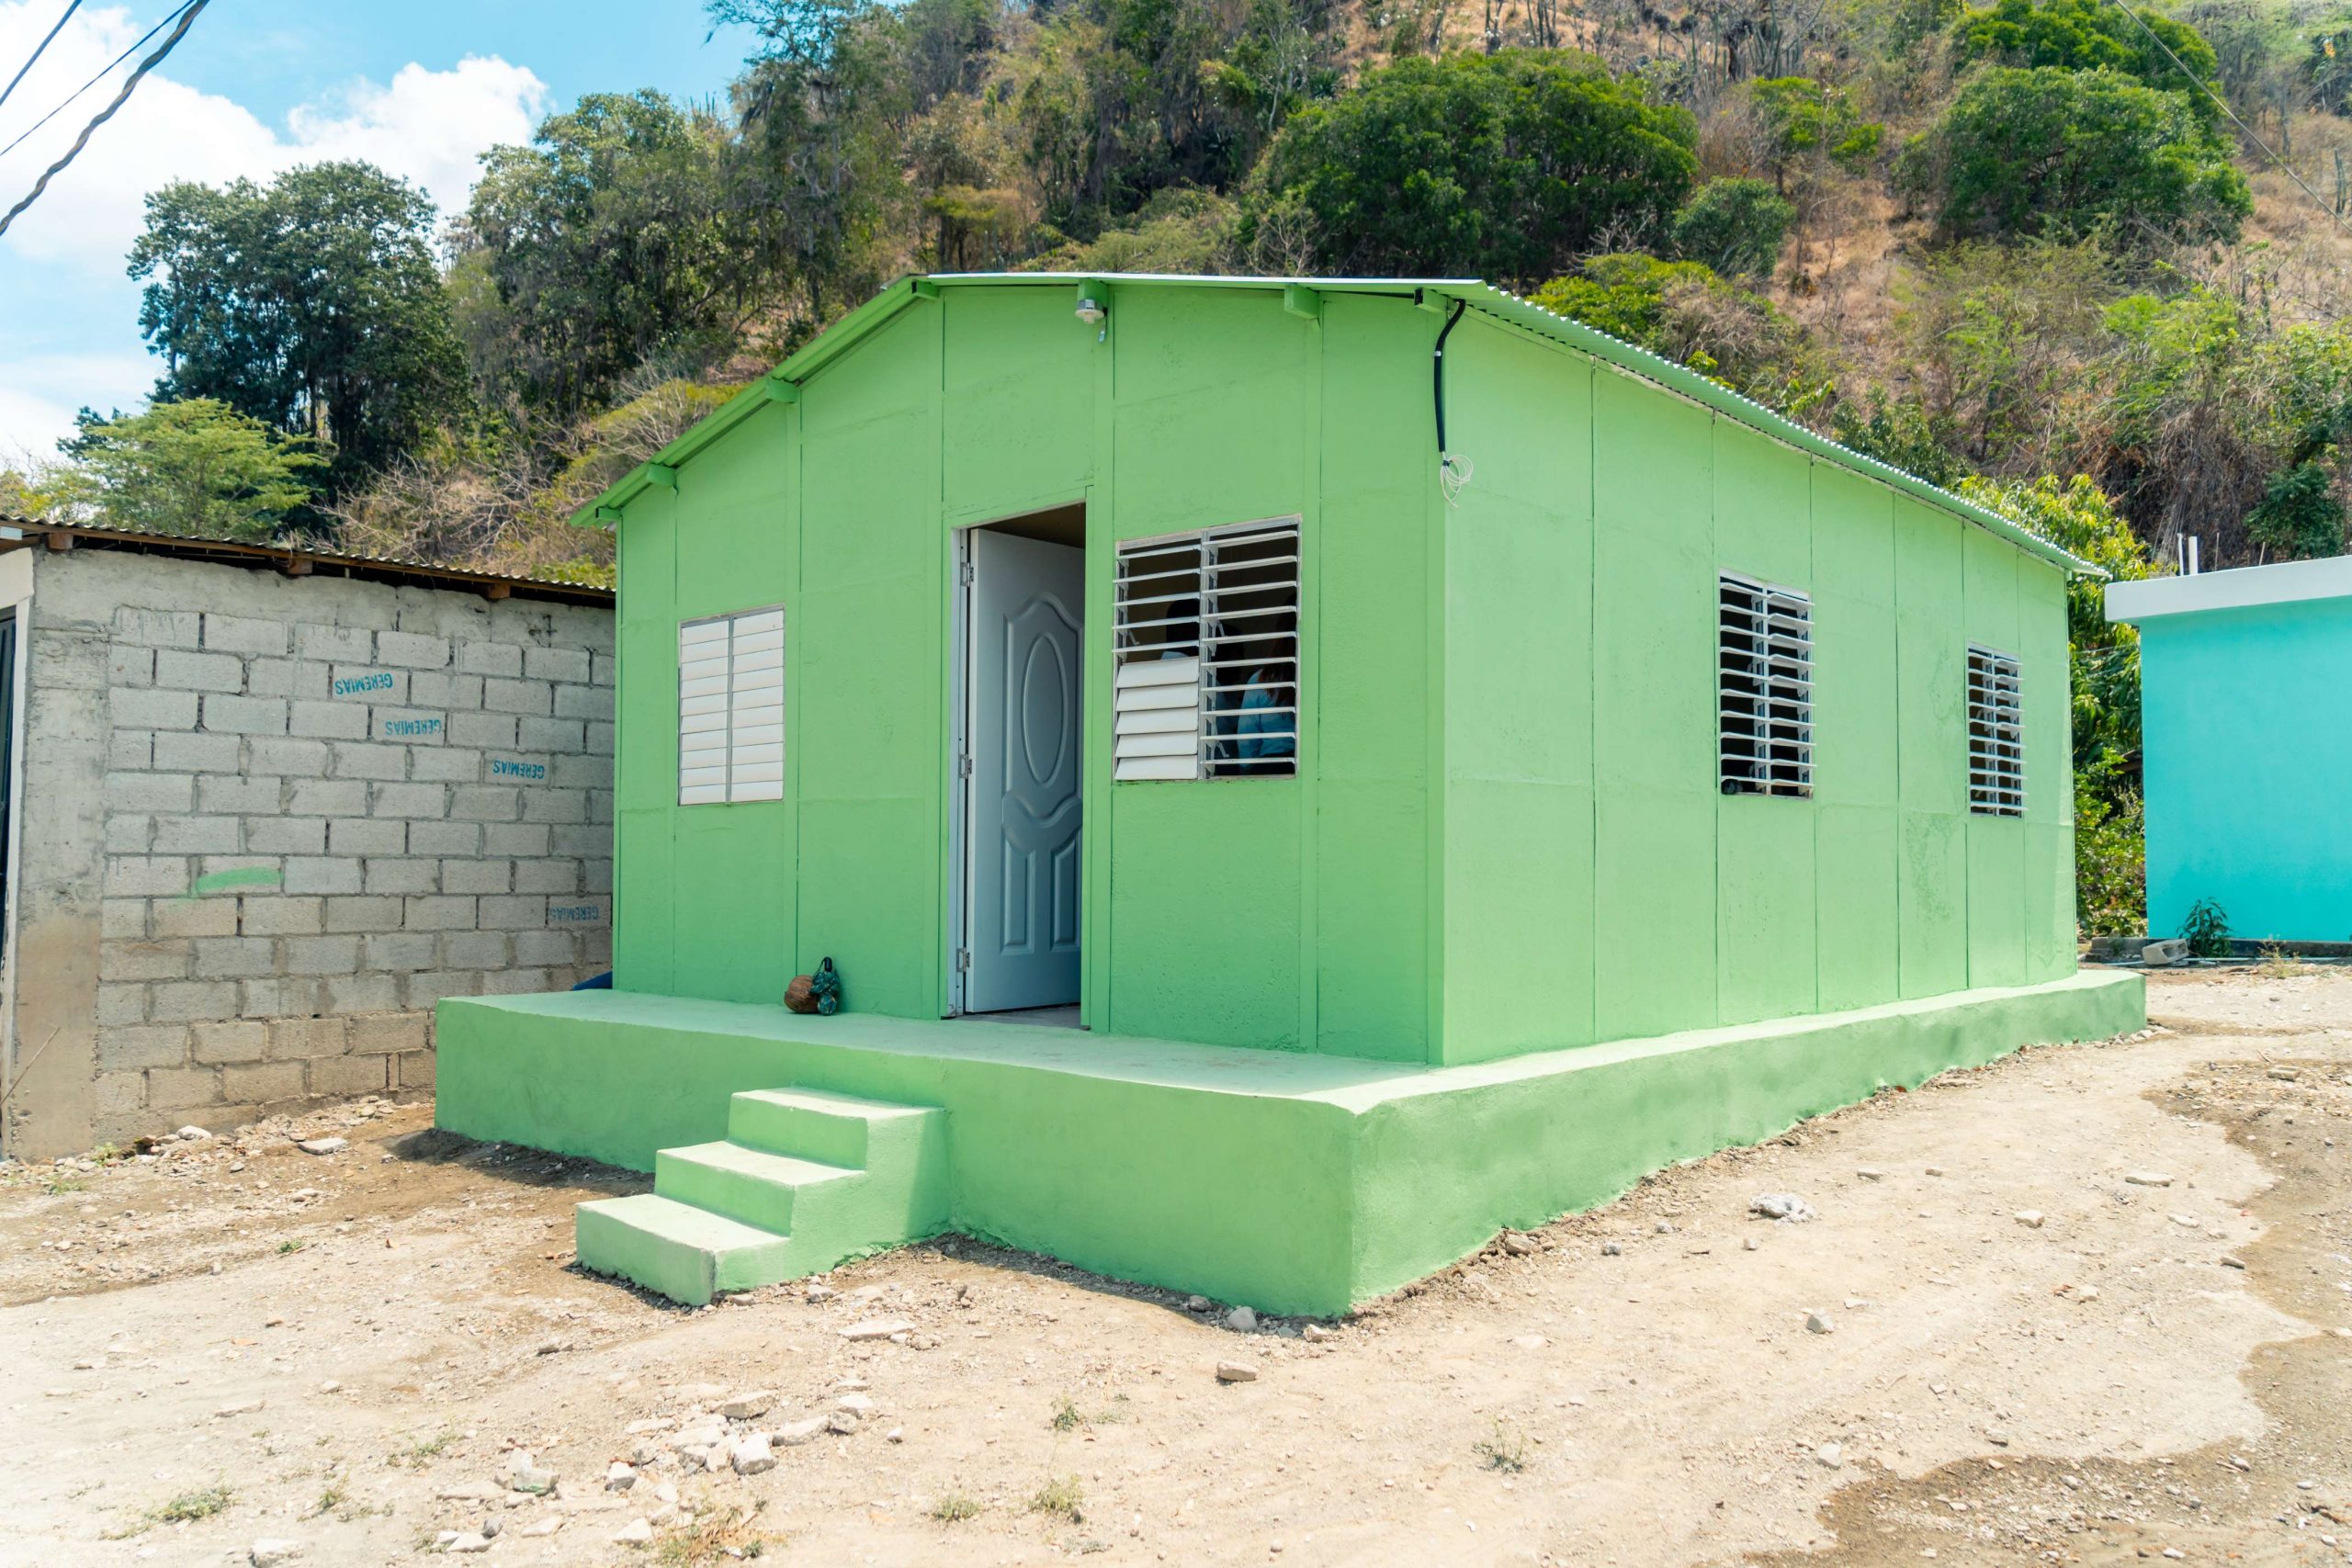 Banco Popular y aliados entregan viviendas y rehabilitan acueducto en Azua